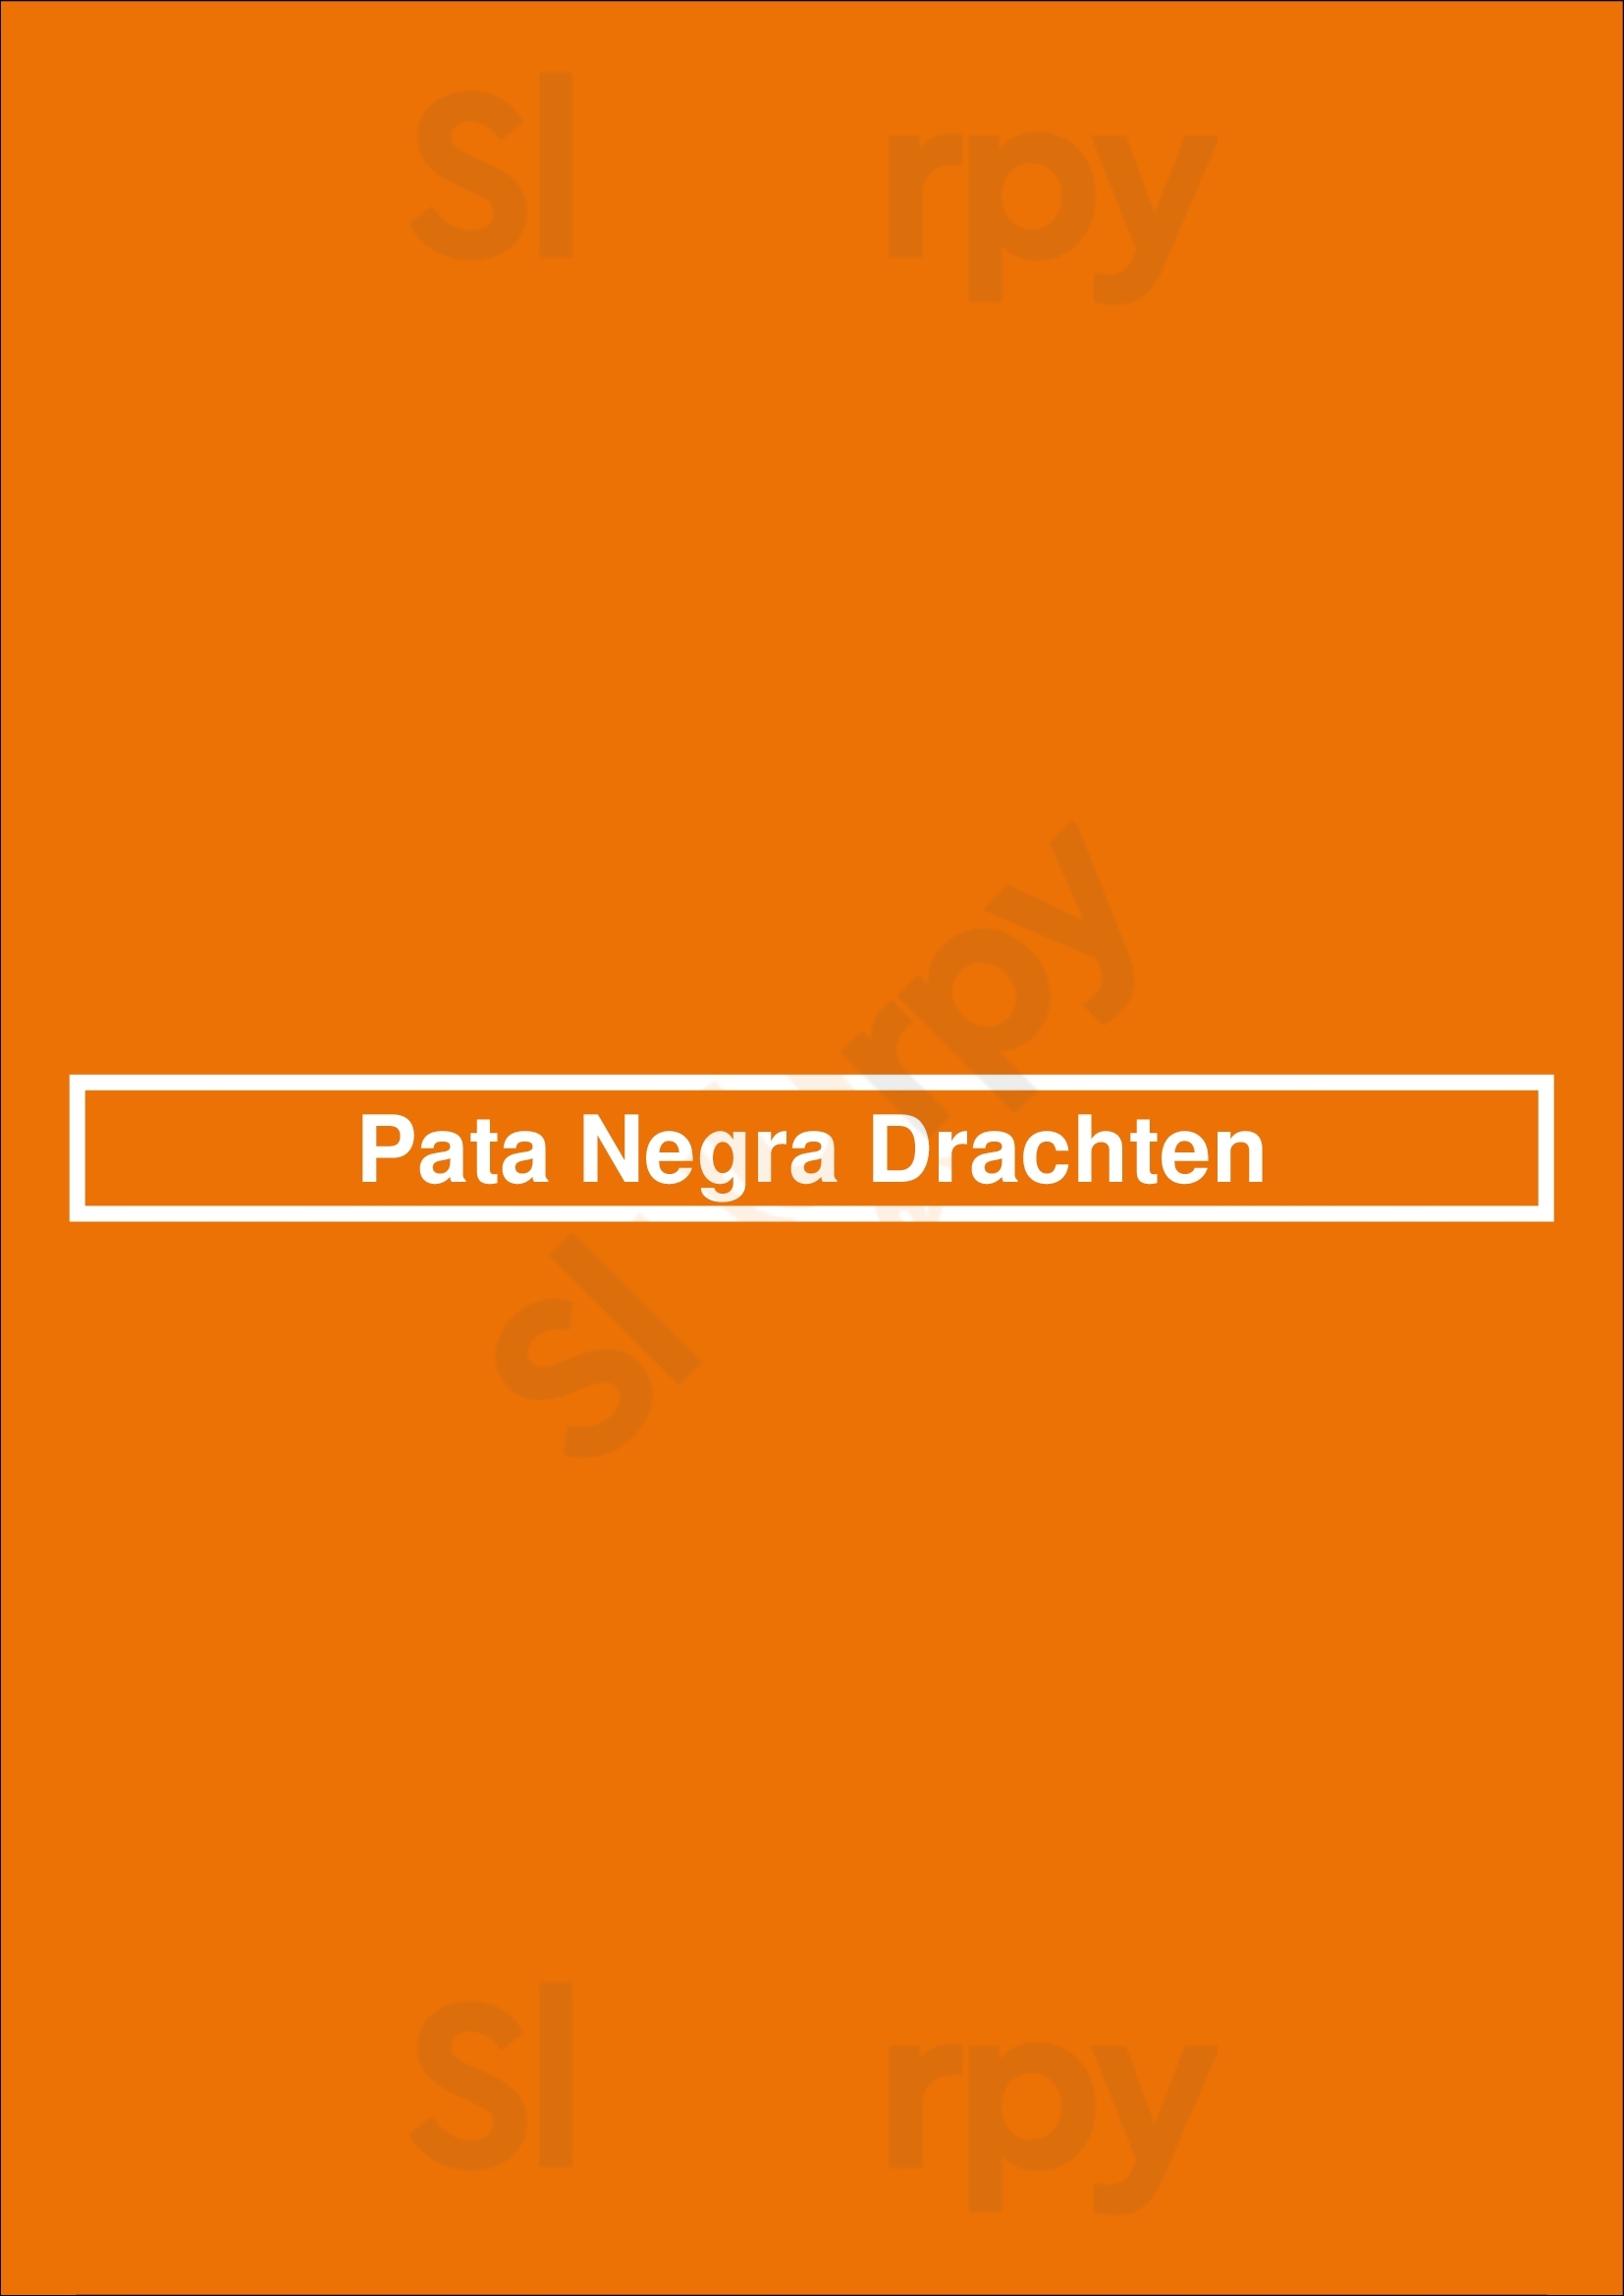 Pata Negra Drachten Drachten Menu - 1